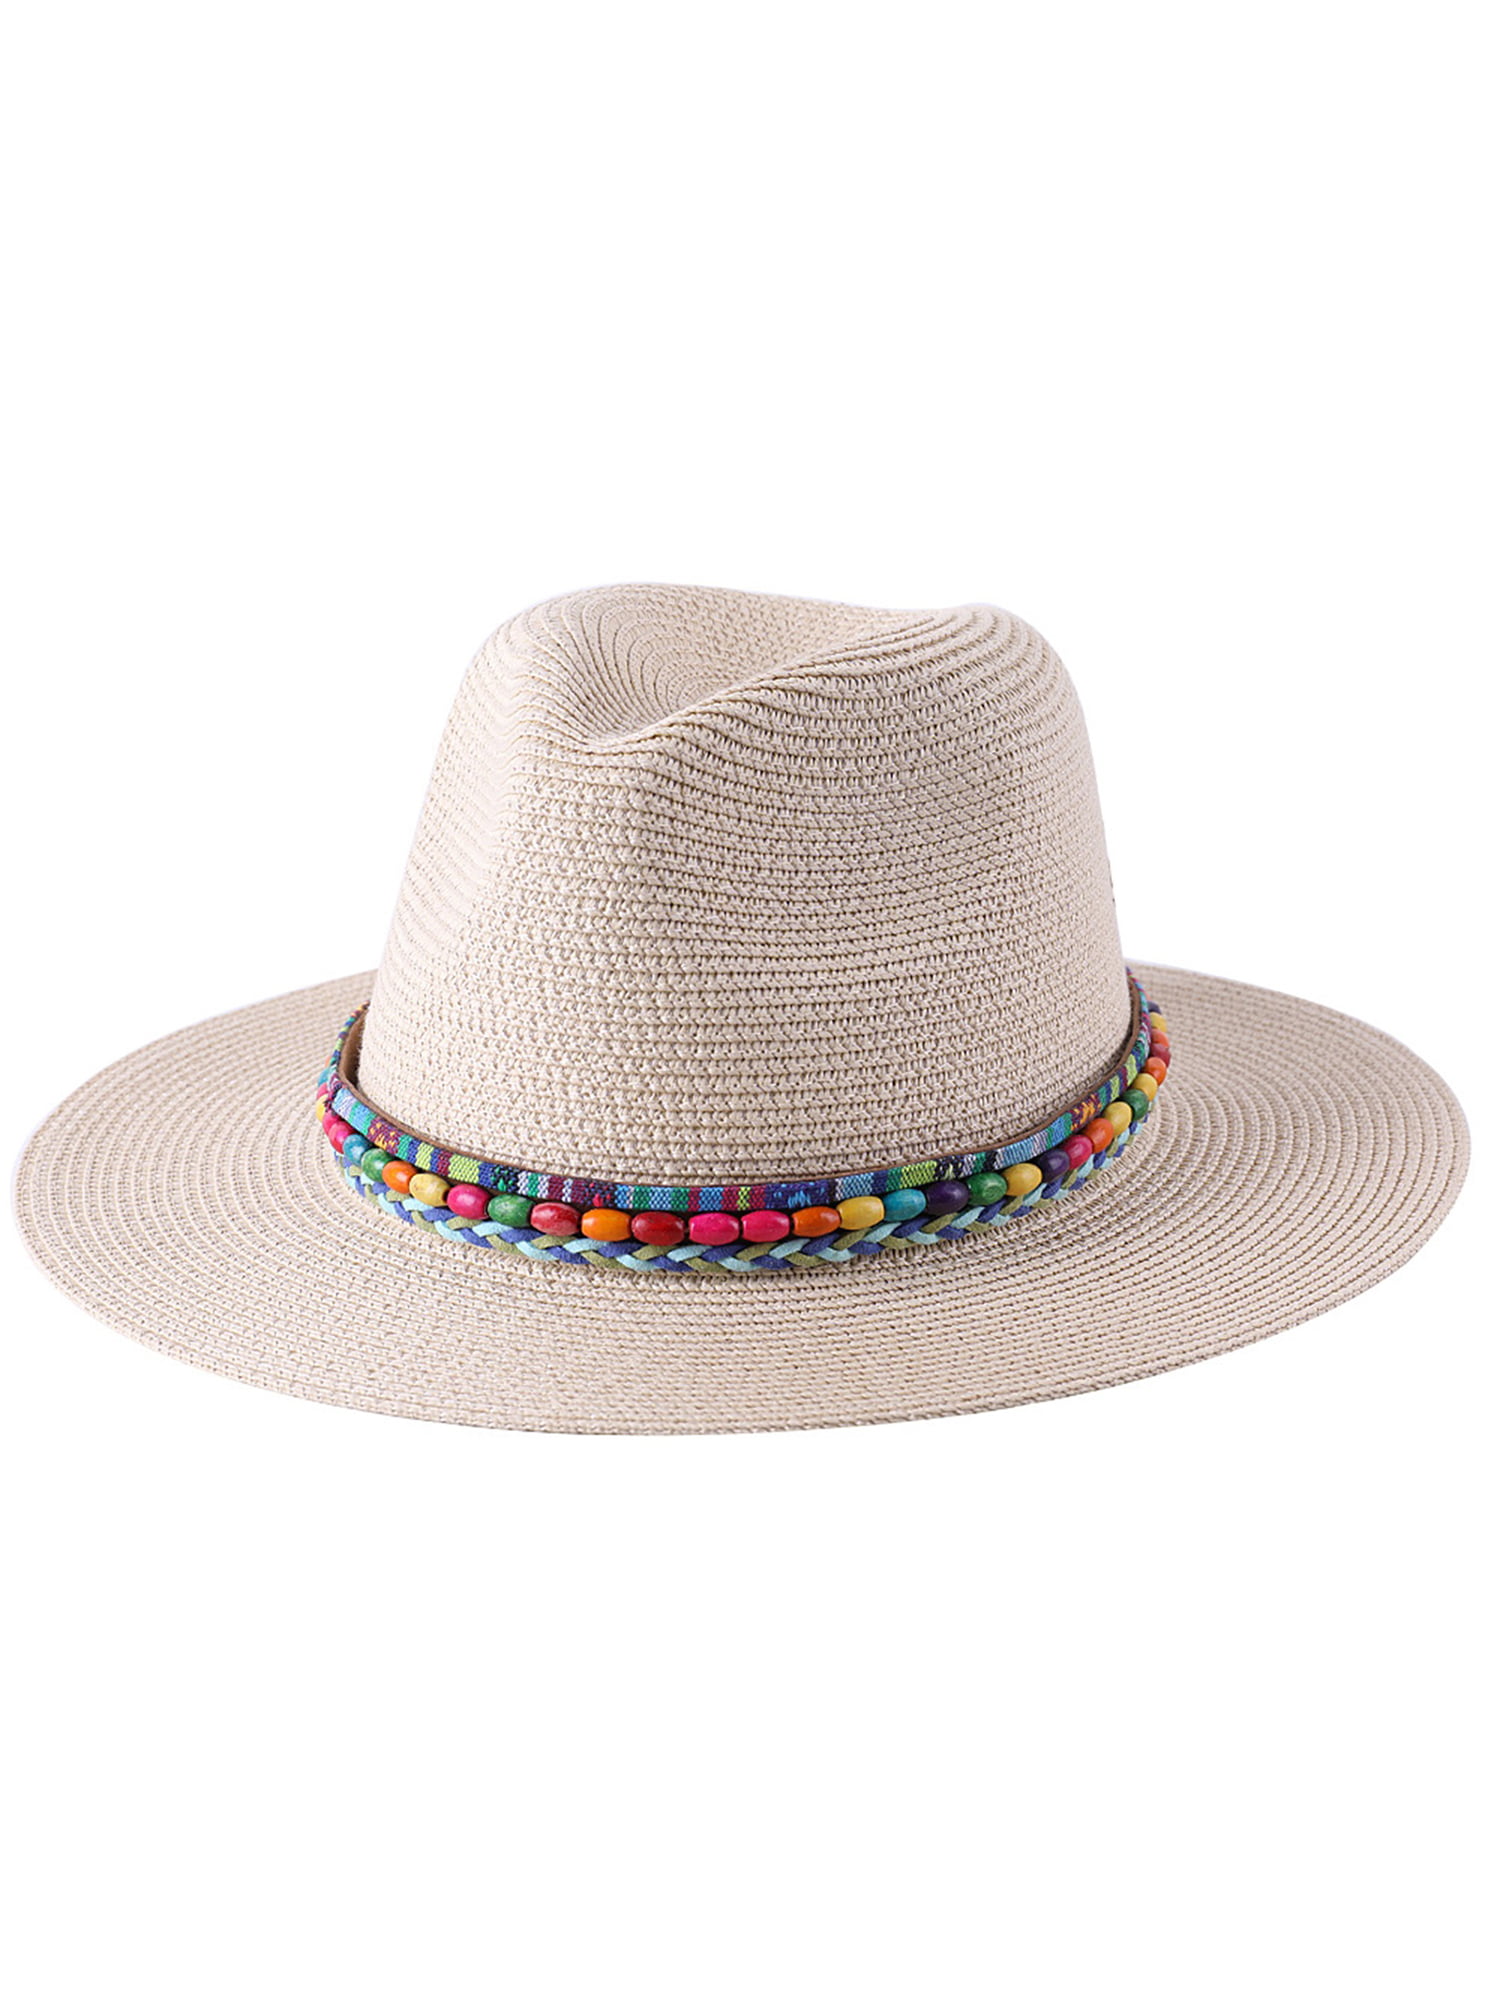 Jelord Summer Cowboy Cowgirl Hat Unisex Roll up Brim Fedora Straw Sun Hat Western Cowboy Hat Straw Beach Cap 